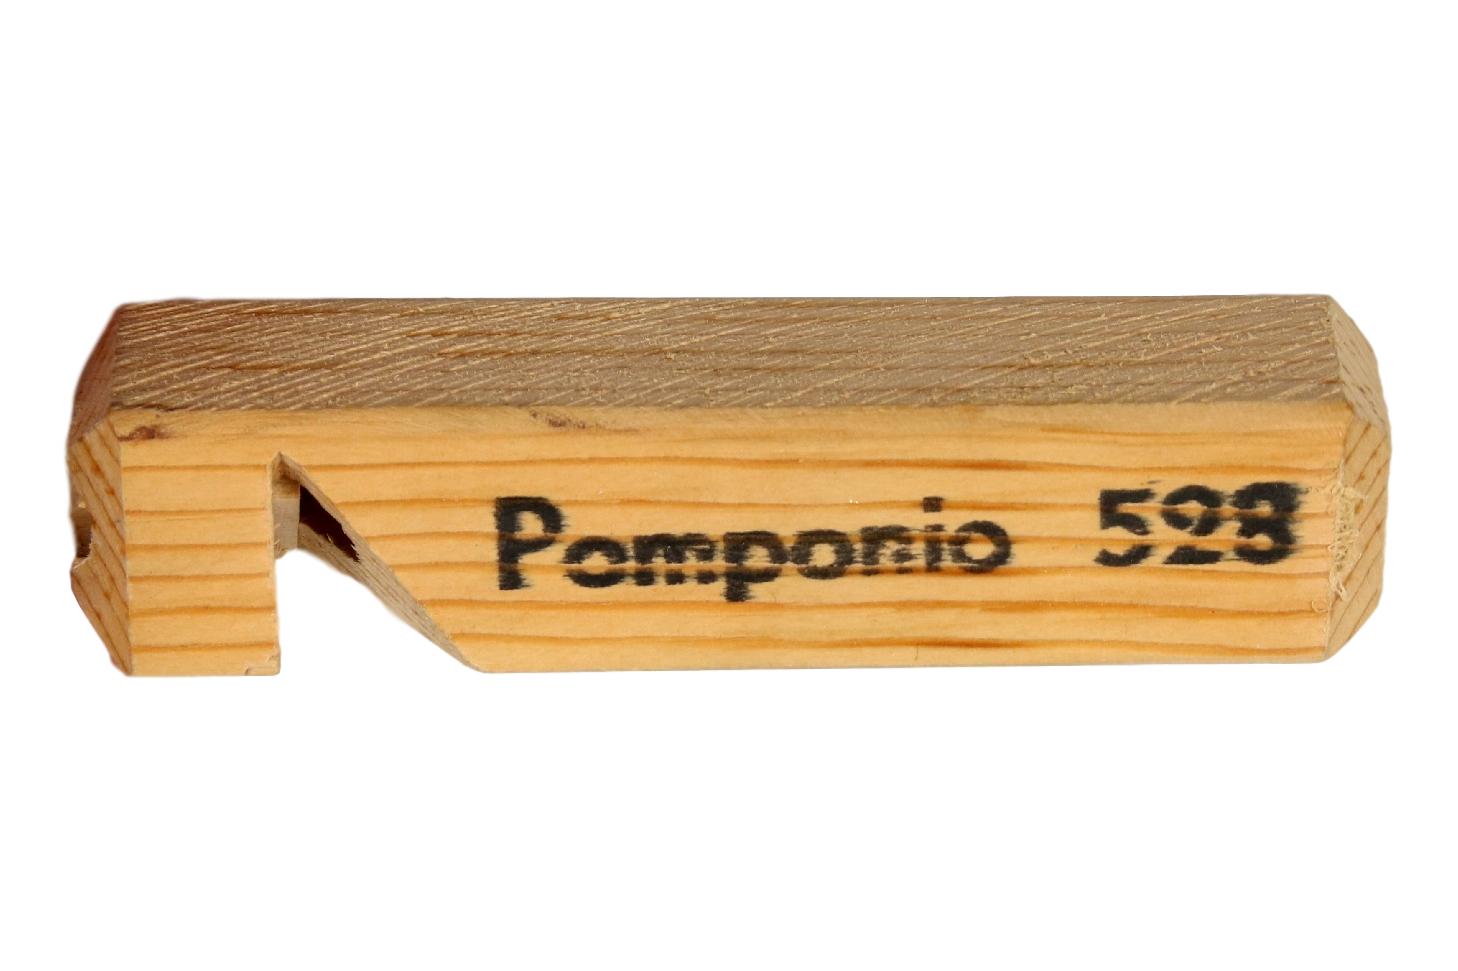 Lodge 528 Pomponio Short Whistle